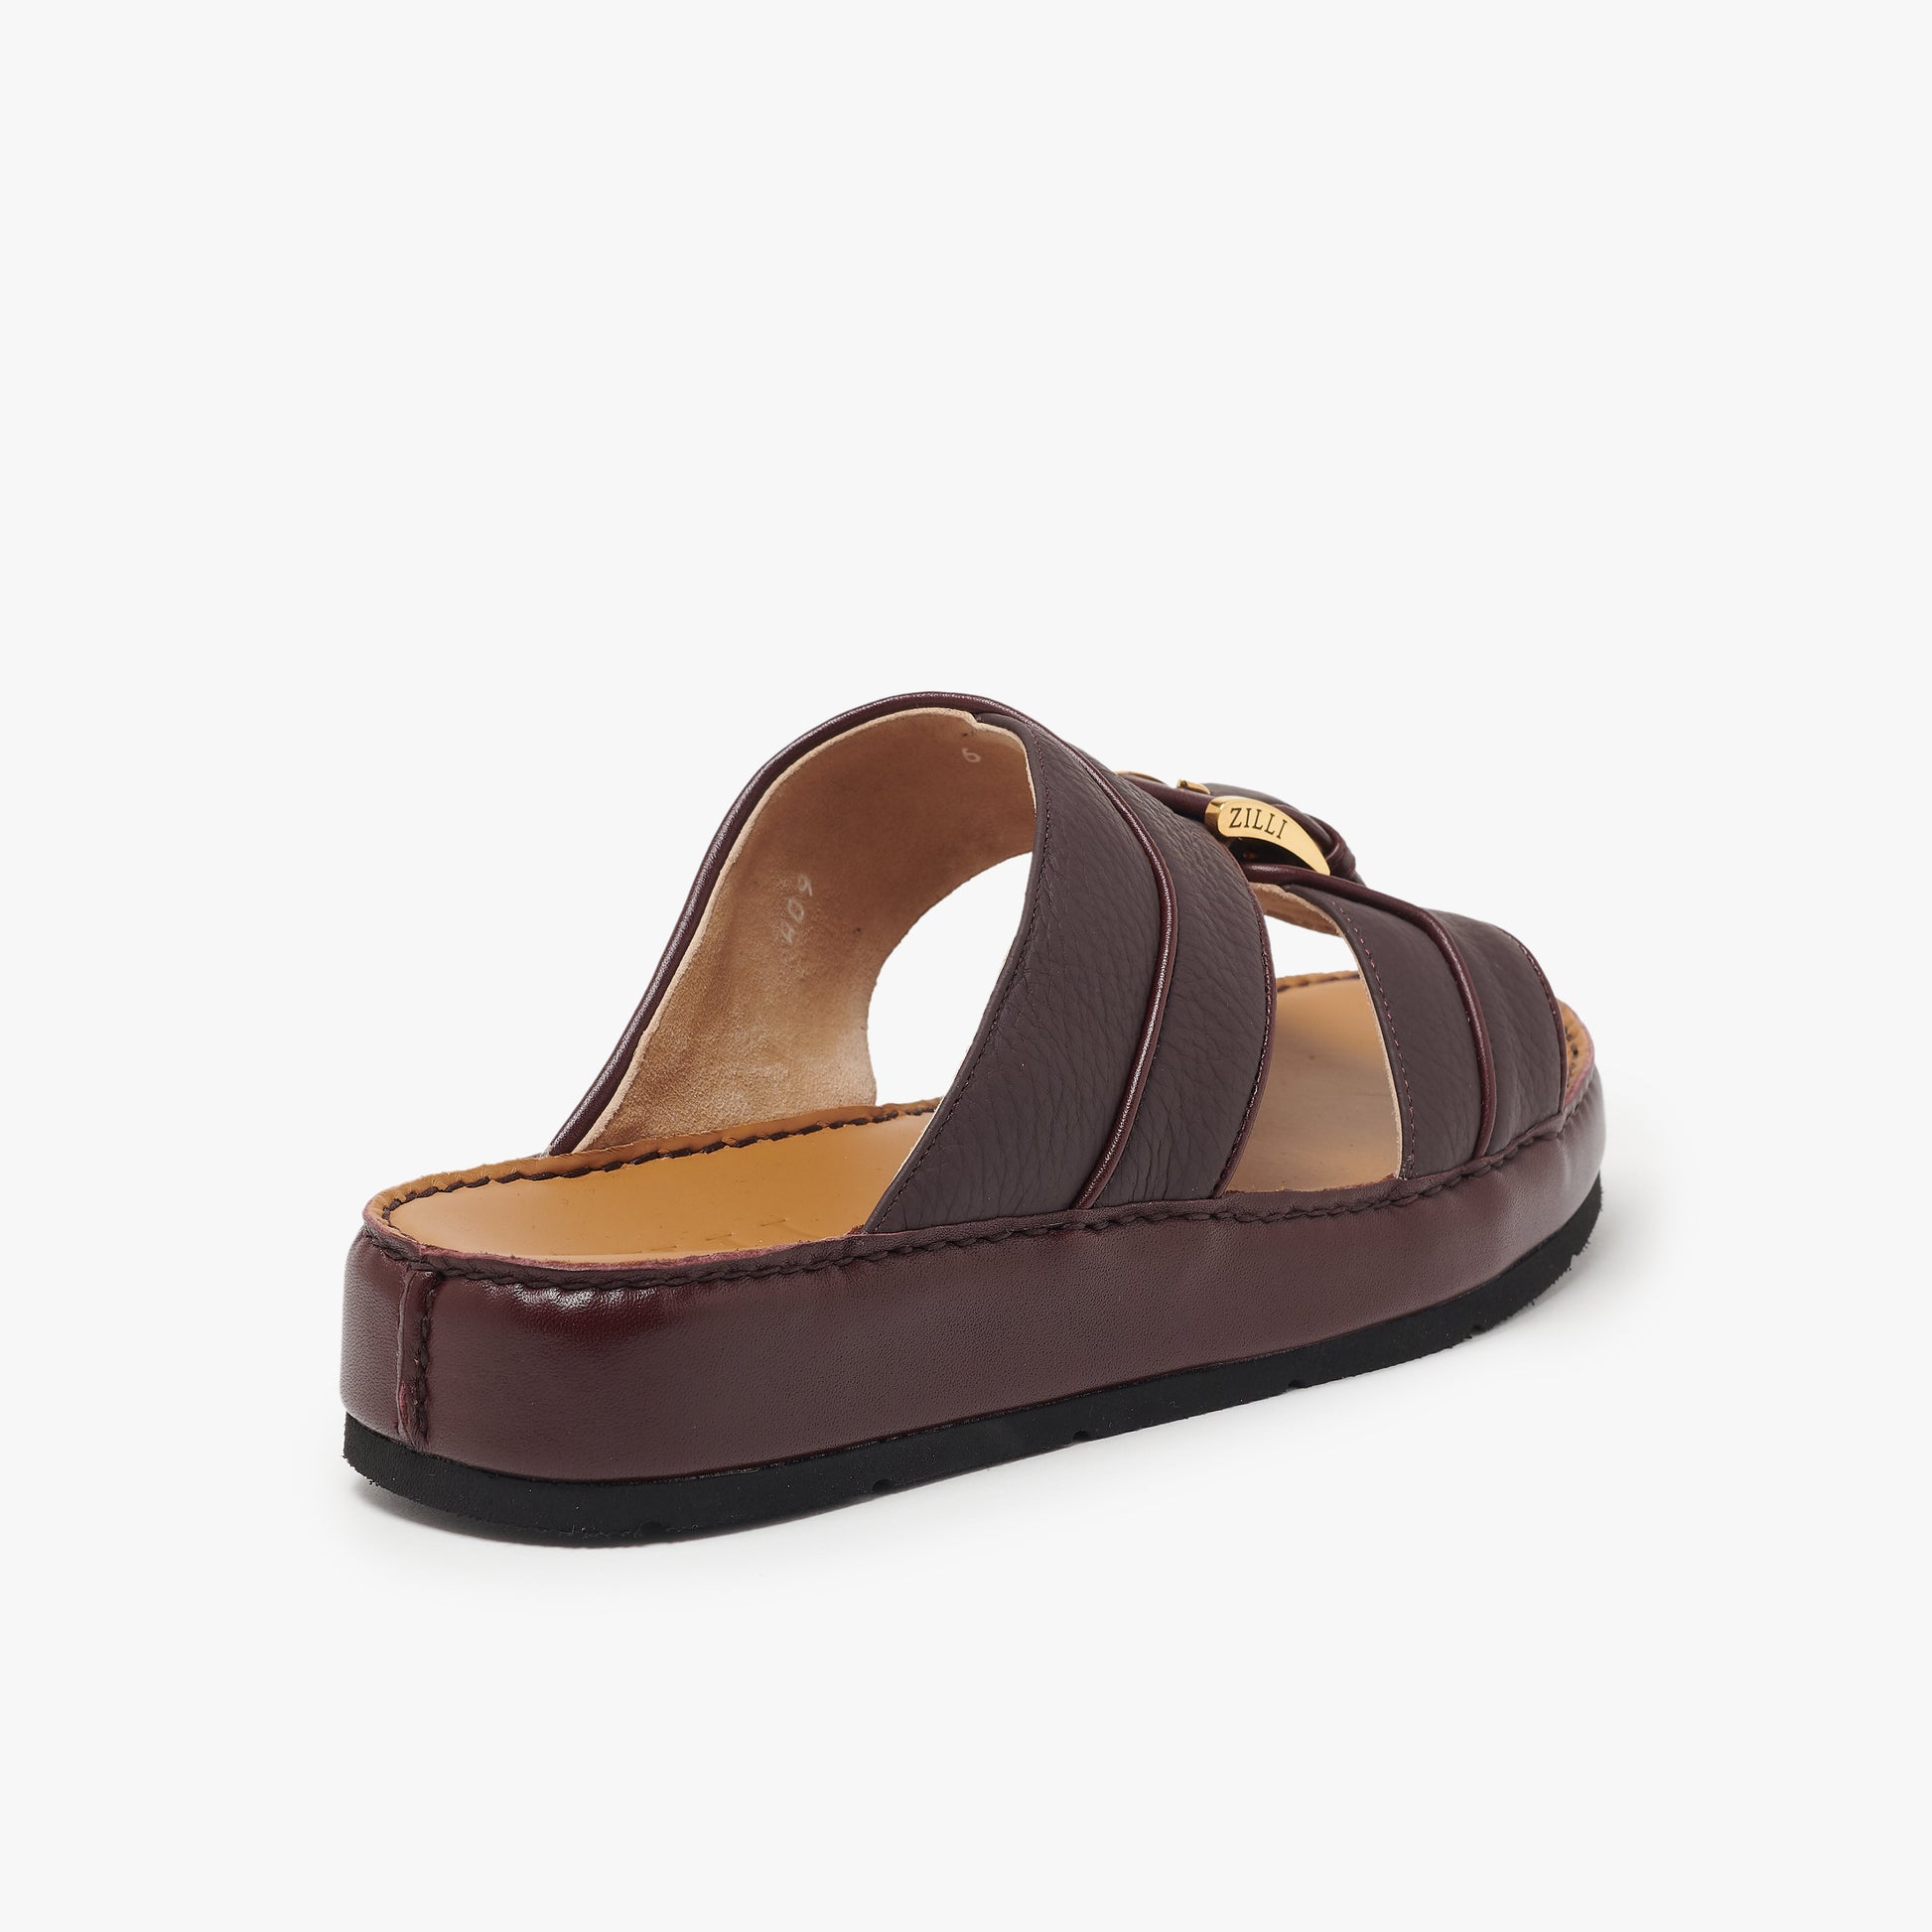 Deerskin leather sandal - ZILLI